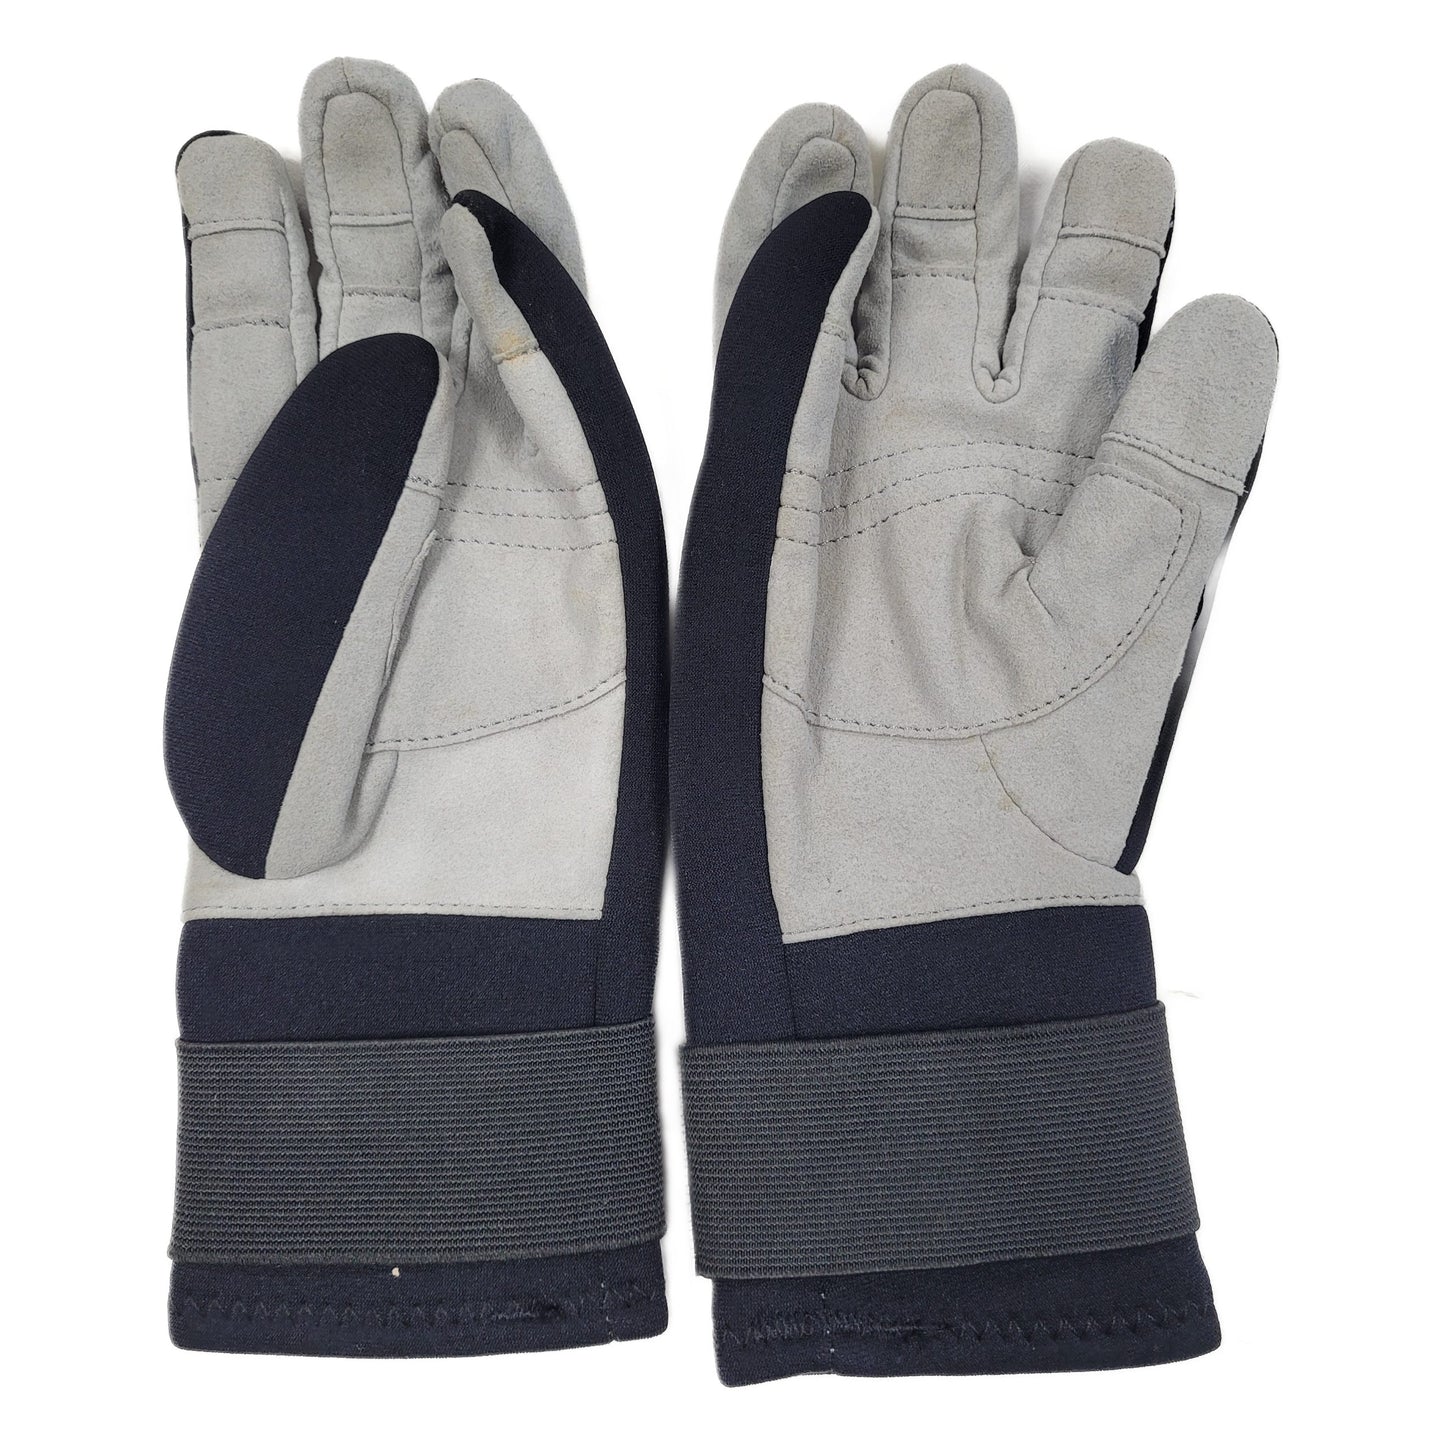 Pinnacle Amara 3mm Dive Gloves "XS"